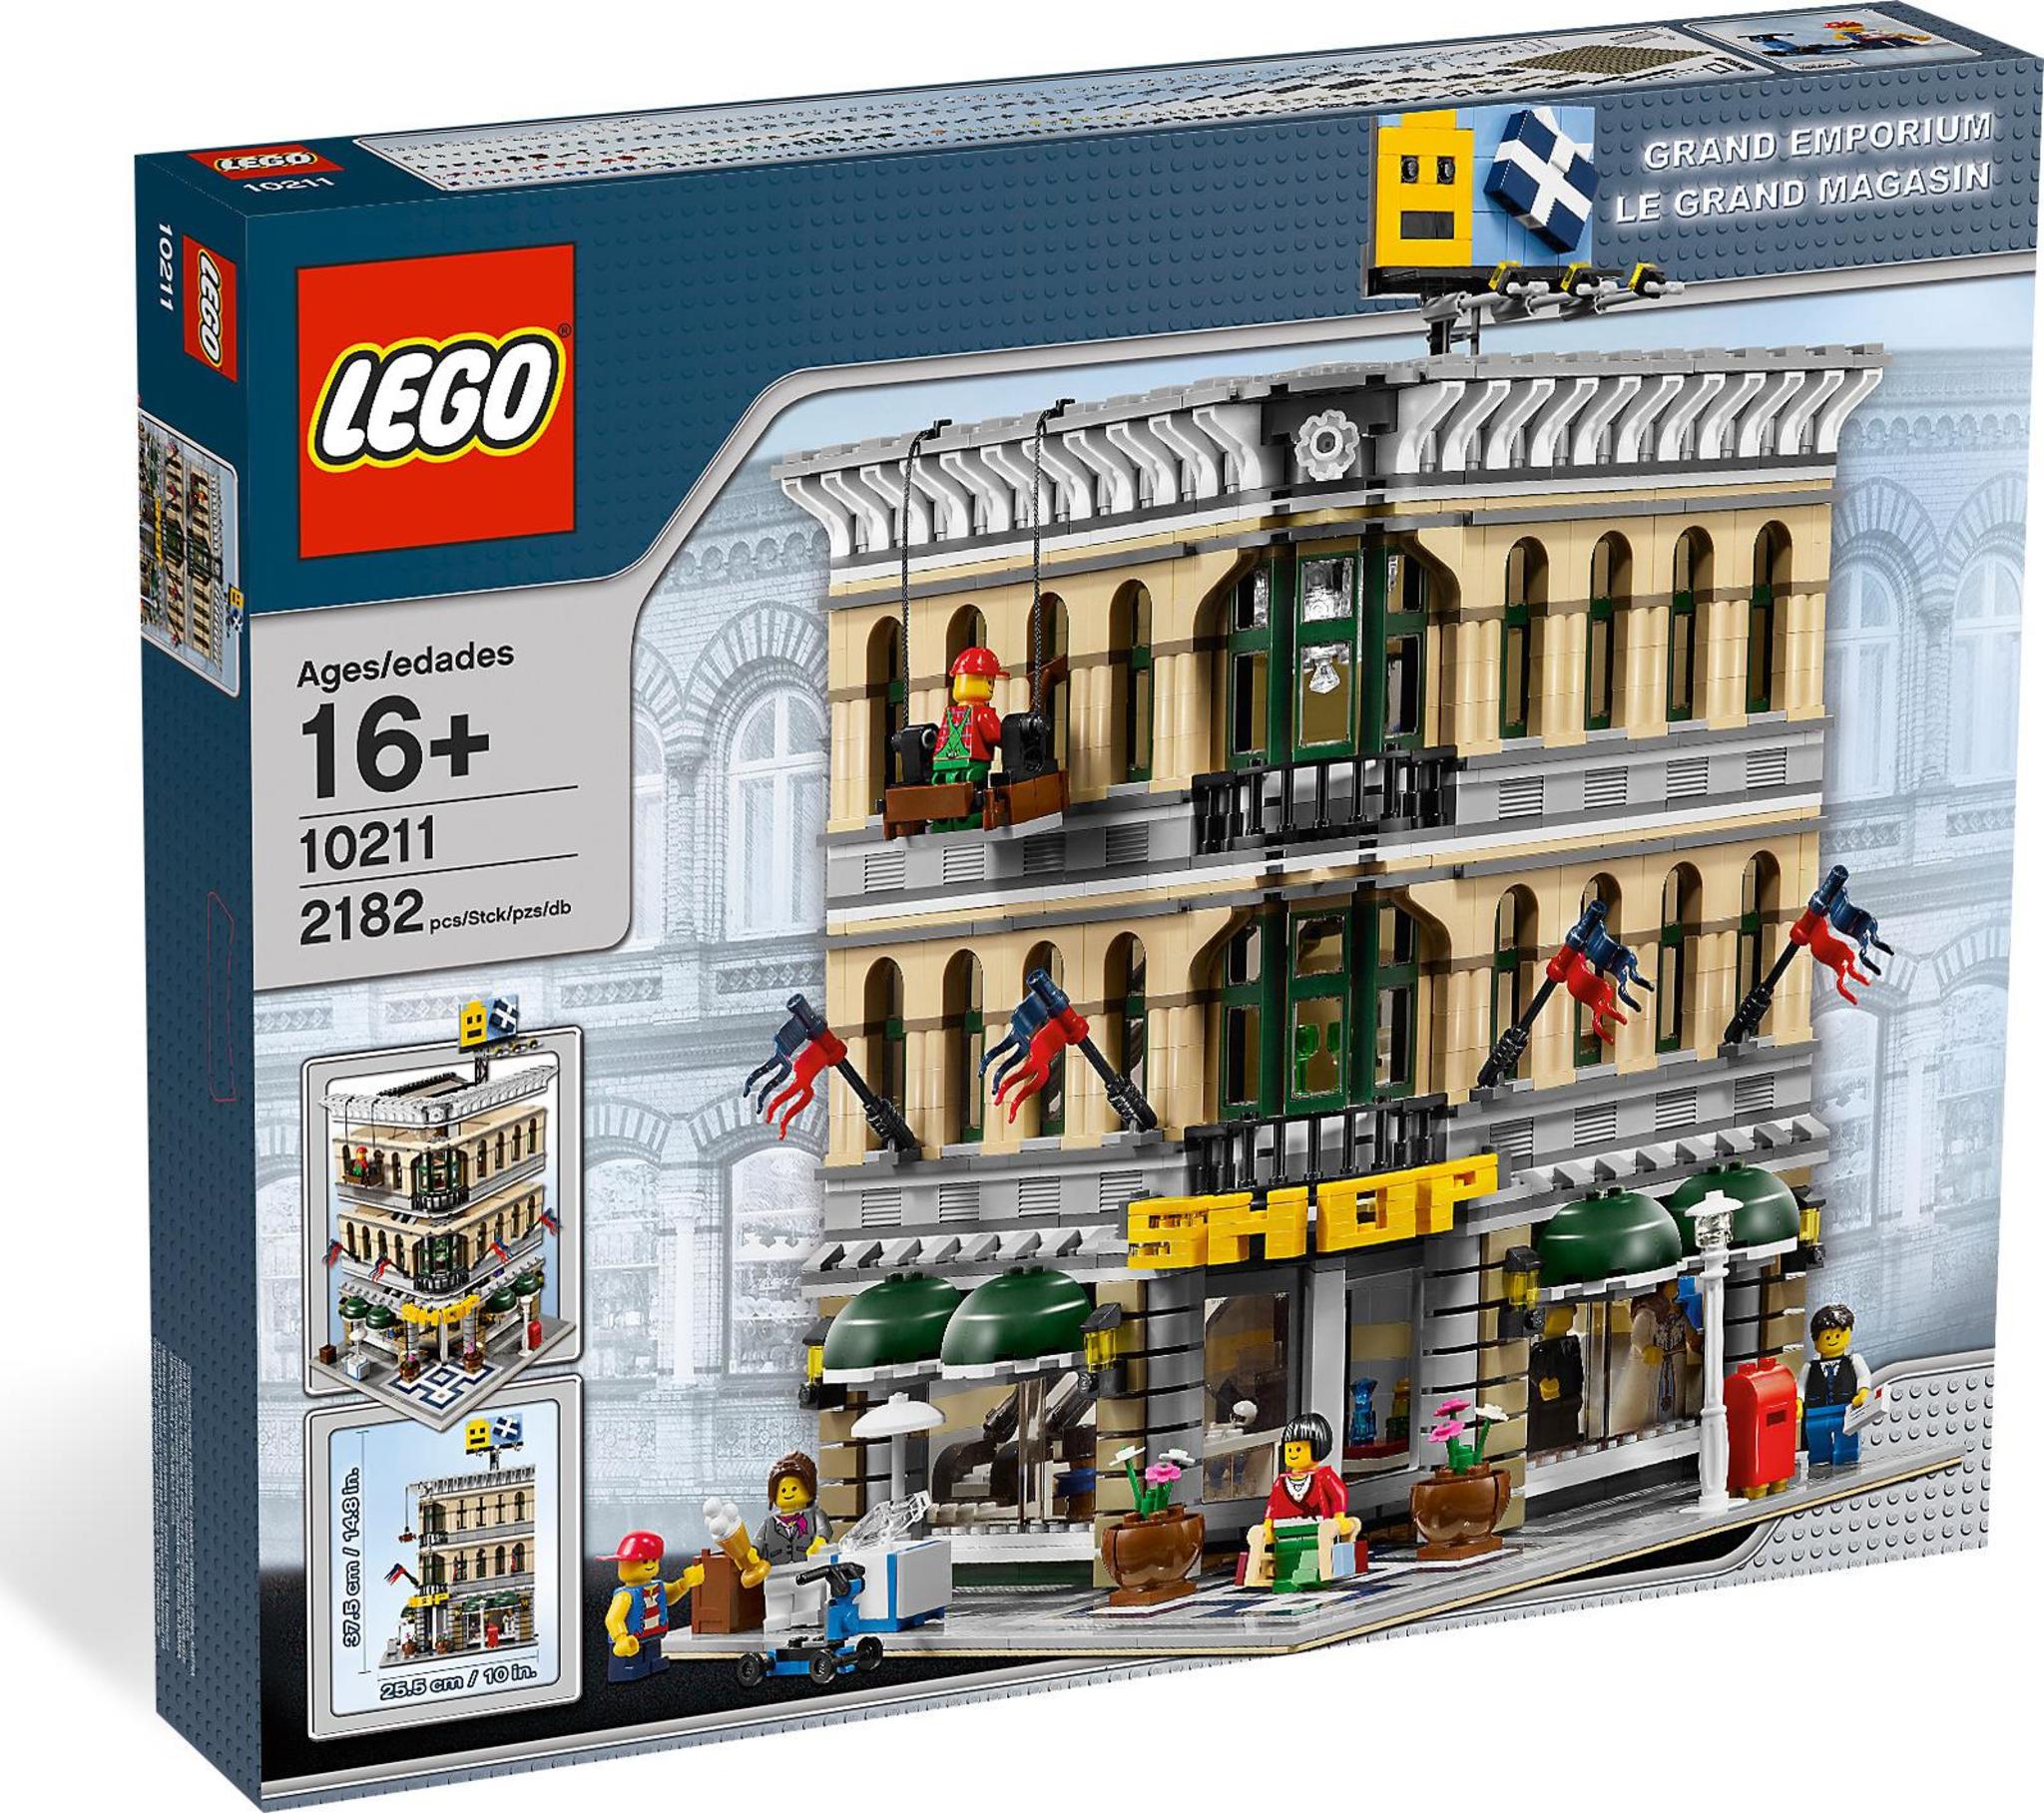 LEGO Creator 10211 - Grand Emporium